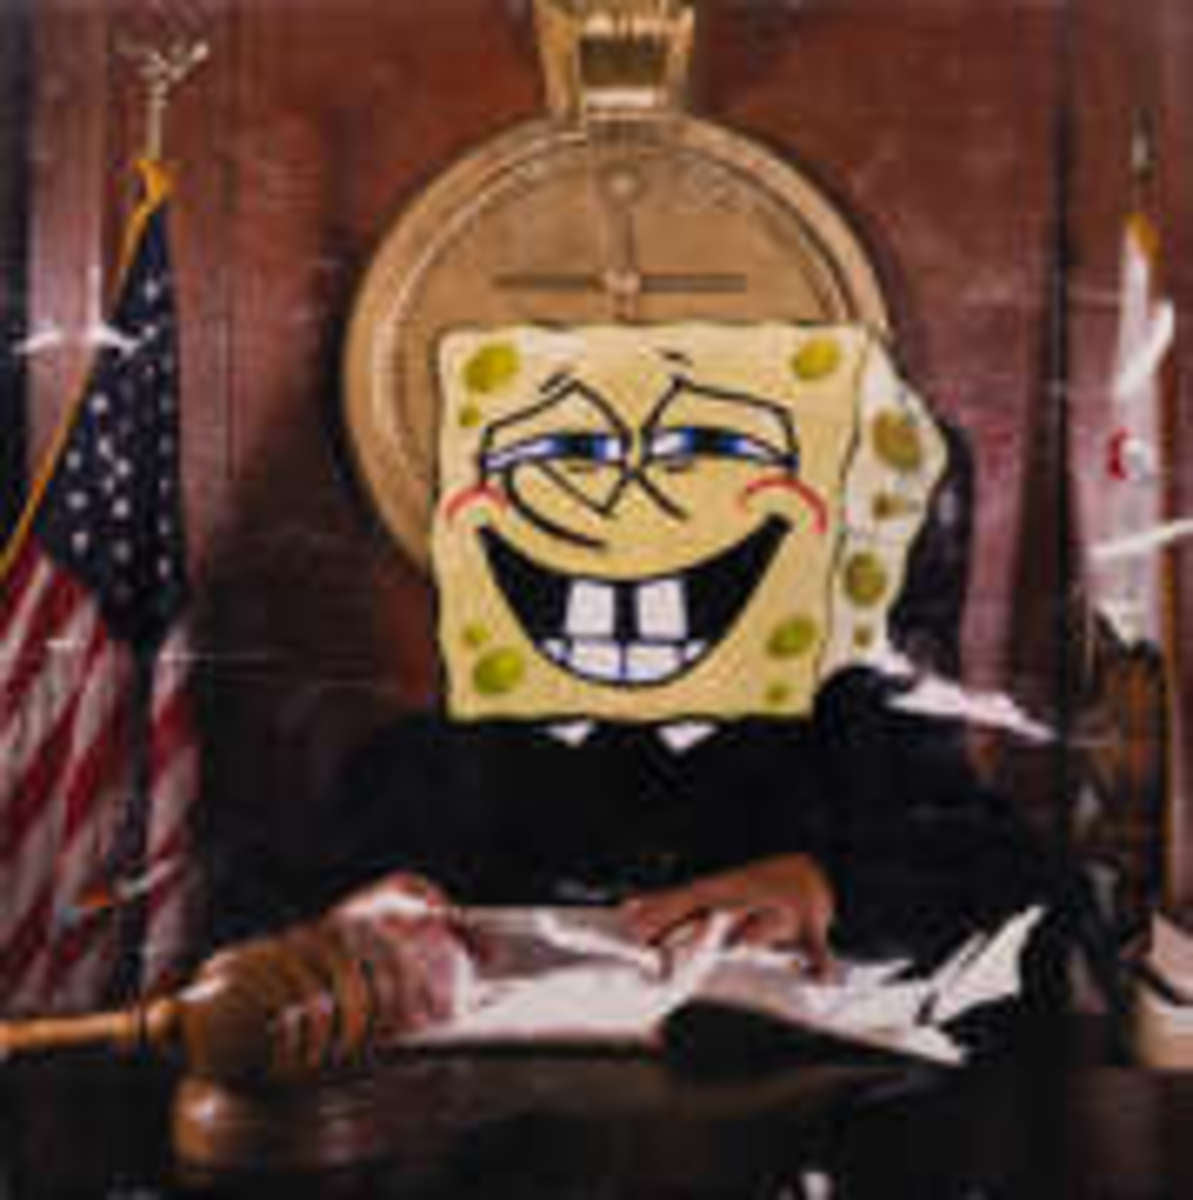 Judge Bob